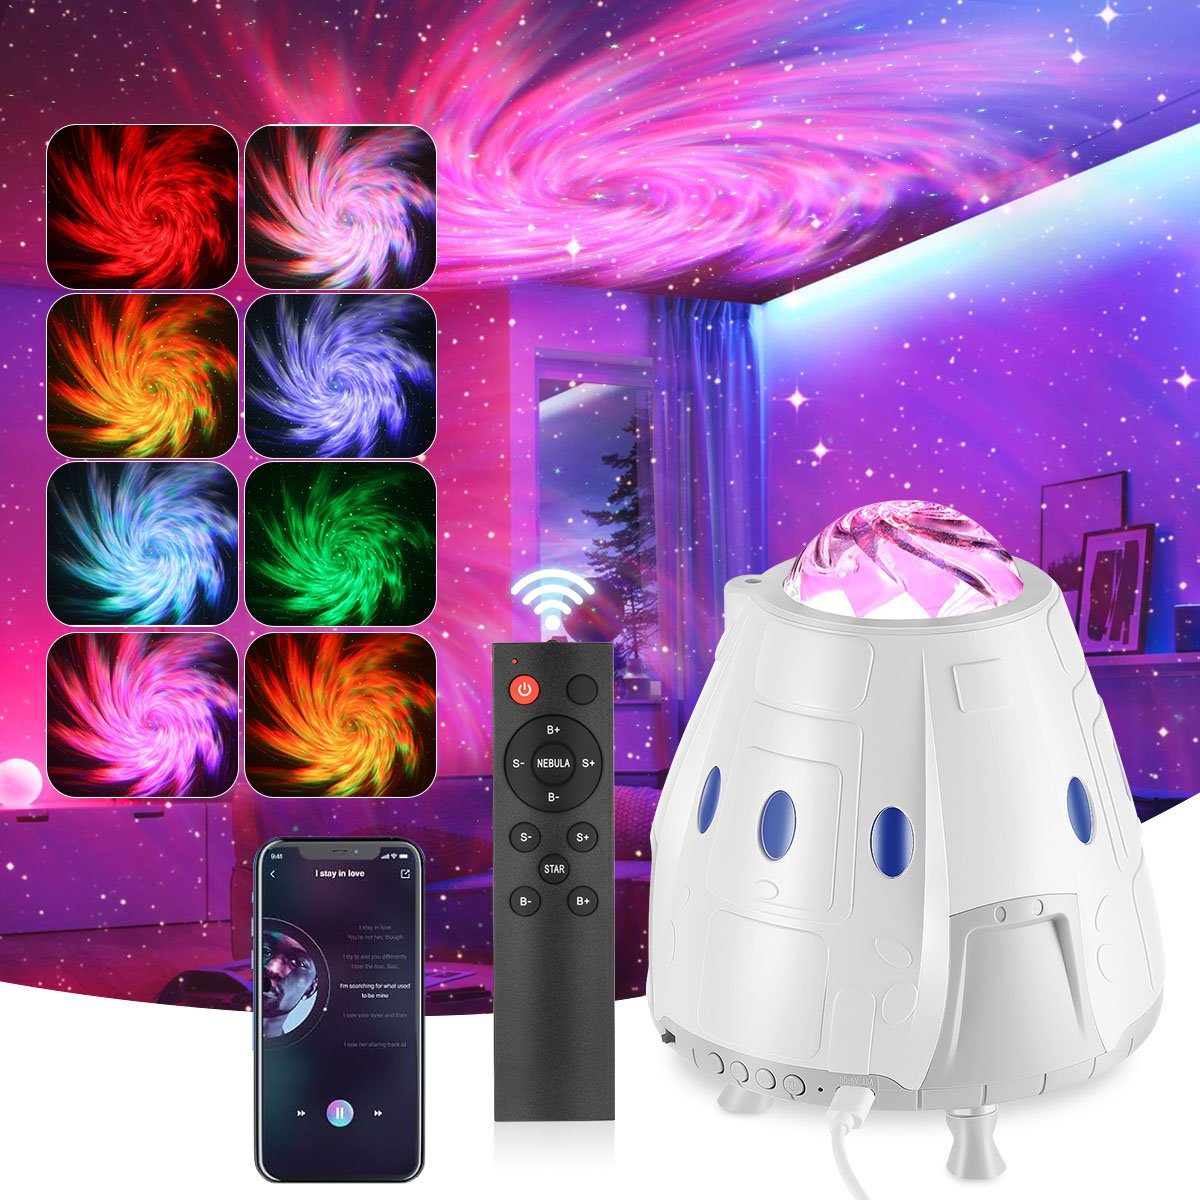 oyajia LED-Sternenhimmel LED Raumkapsel Projektor mit Bluetooth Lautsprecher, Galaxy Nachtlicht, LED fest integriert, bunt, Schlafzimmer Deckeprojektion Lampe, Geschenk für Kinder und Erwachsene